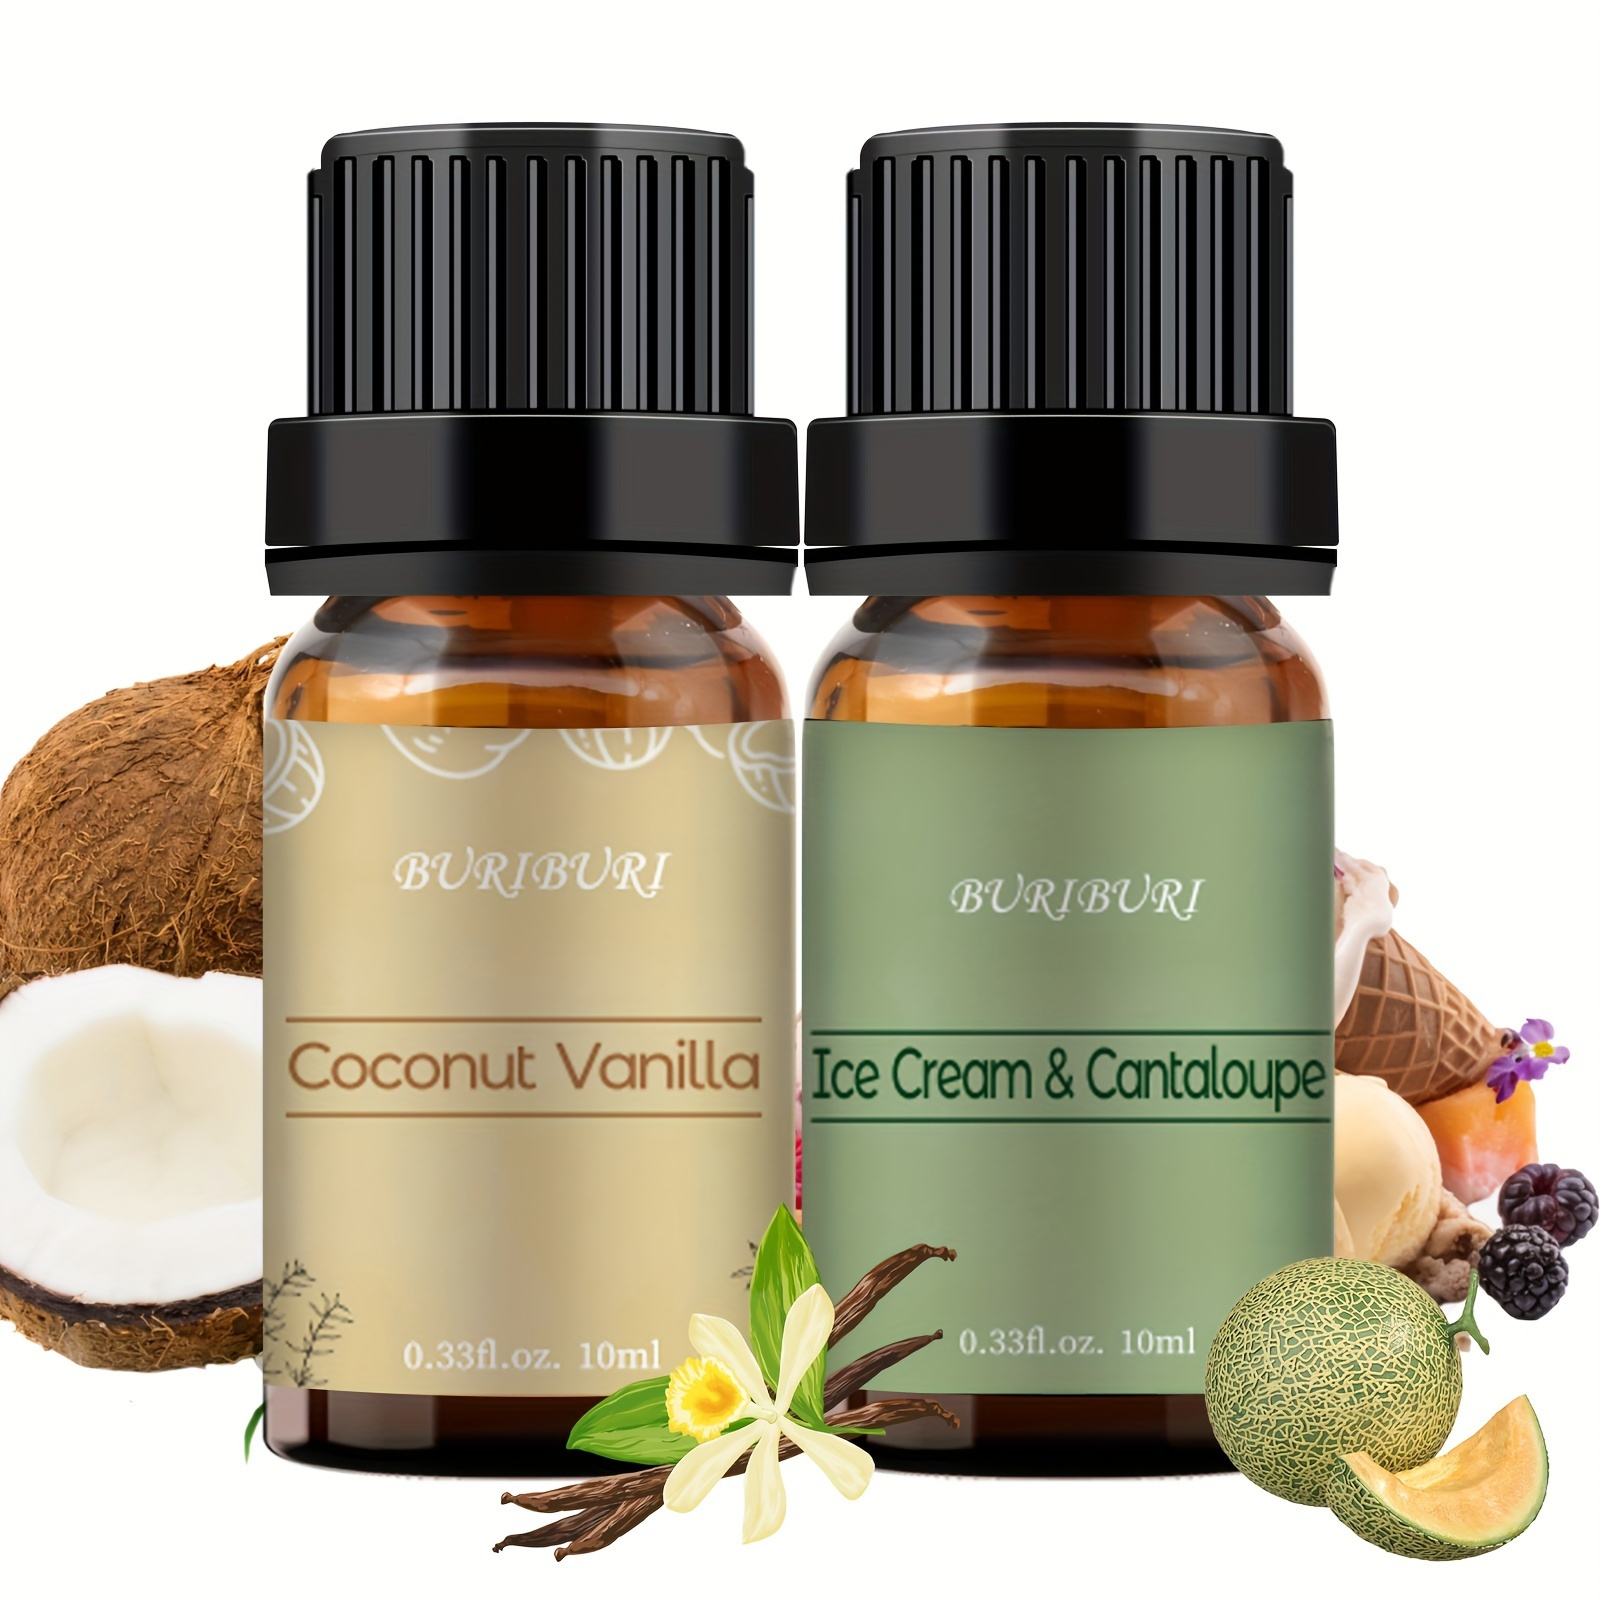 Good Essential 10ml Oils - Coconut Fragrance Oil - 0.33 Fluid Ounces  Coconut 0.33 Fl Oz (Pack of 1)